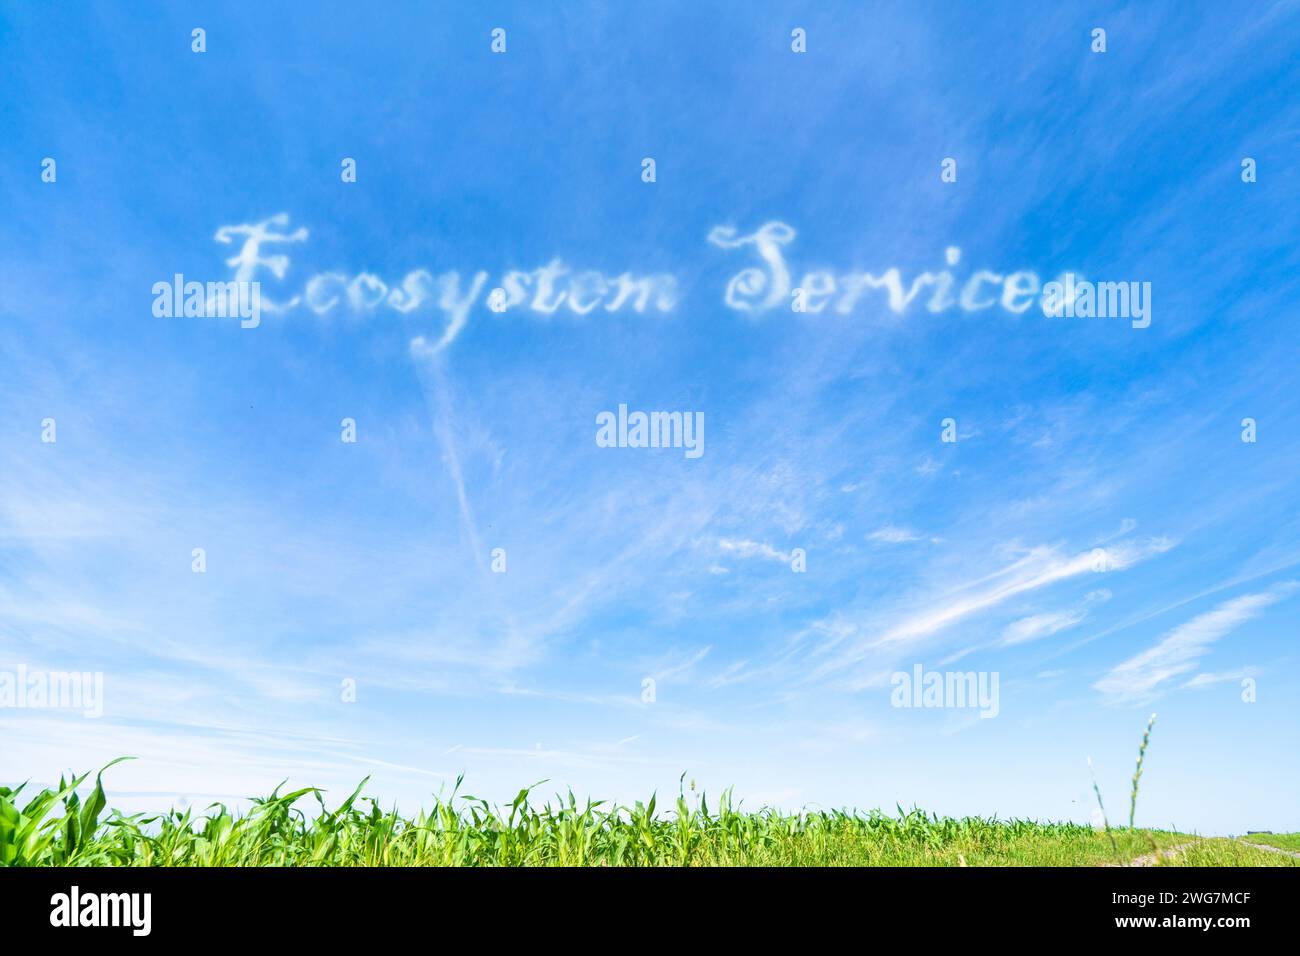 Ökosystemdienstleistungen: Vorteile, die Ökosysteme für den Menschen bieten, wie sauberes Wasser und saubere Luft. Stockfoto